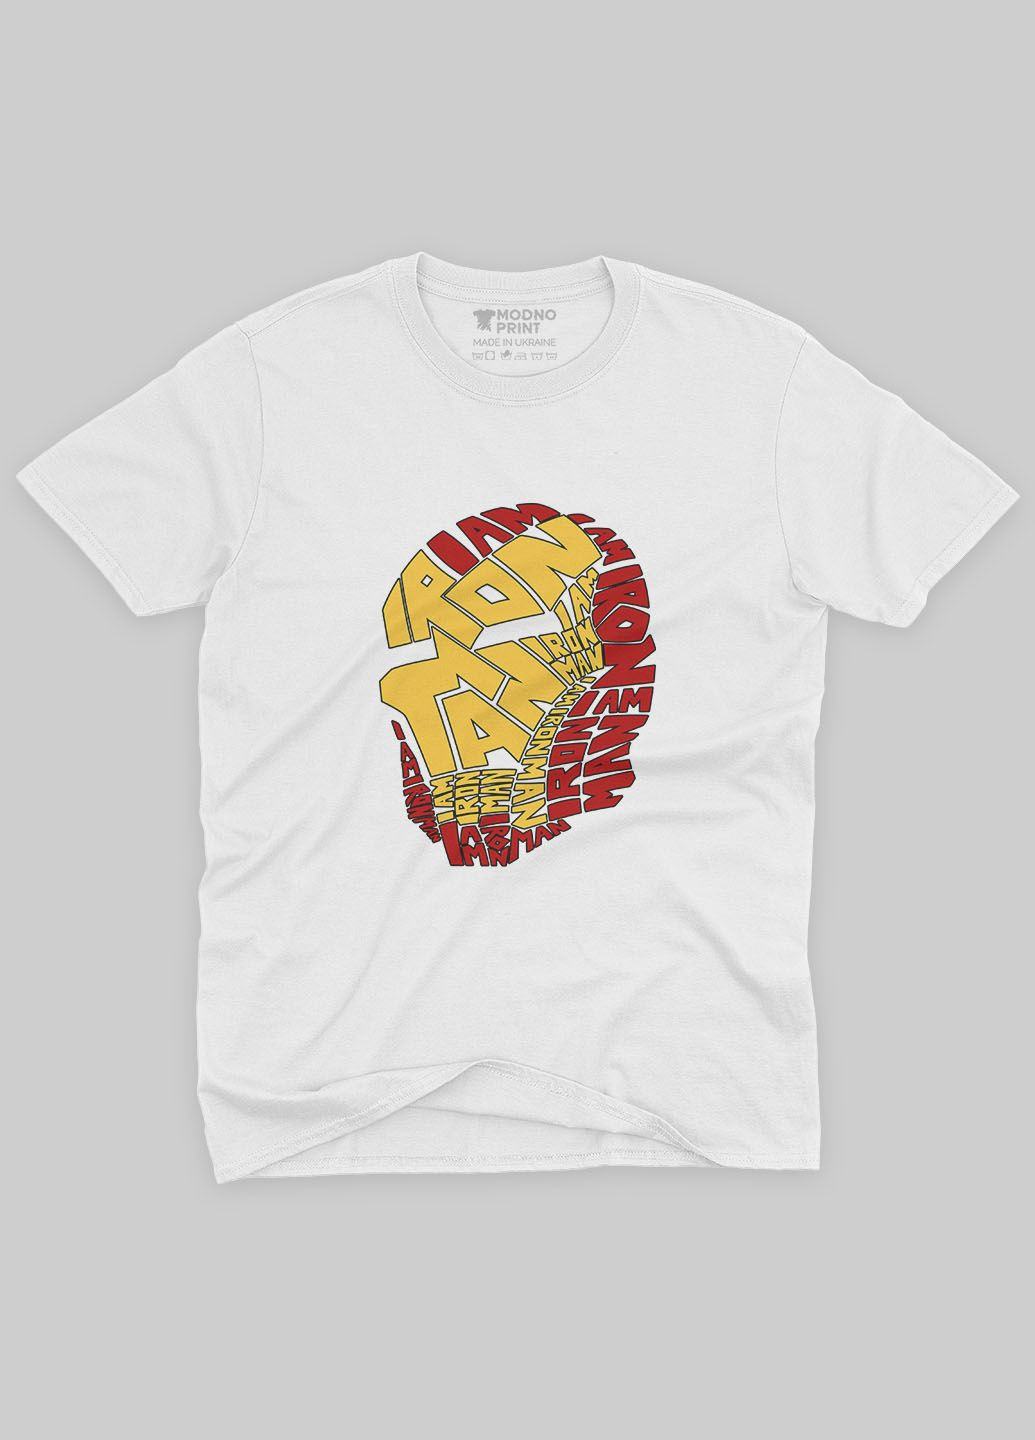 Біла демісезонна футболка для хлопчика з принтом супергероя - залізна людина (ts001-1-whi-006-016-001-b) Modno